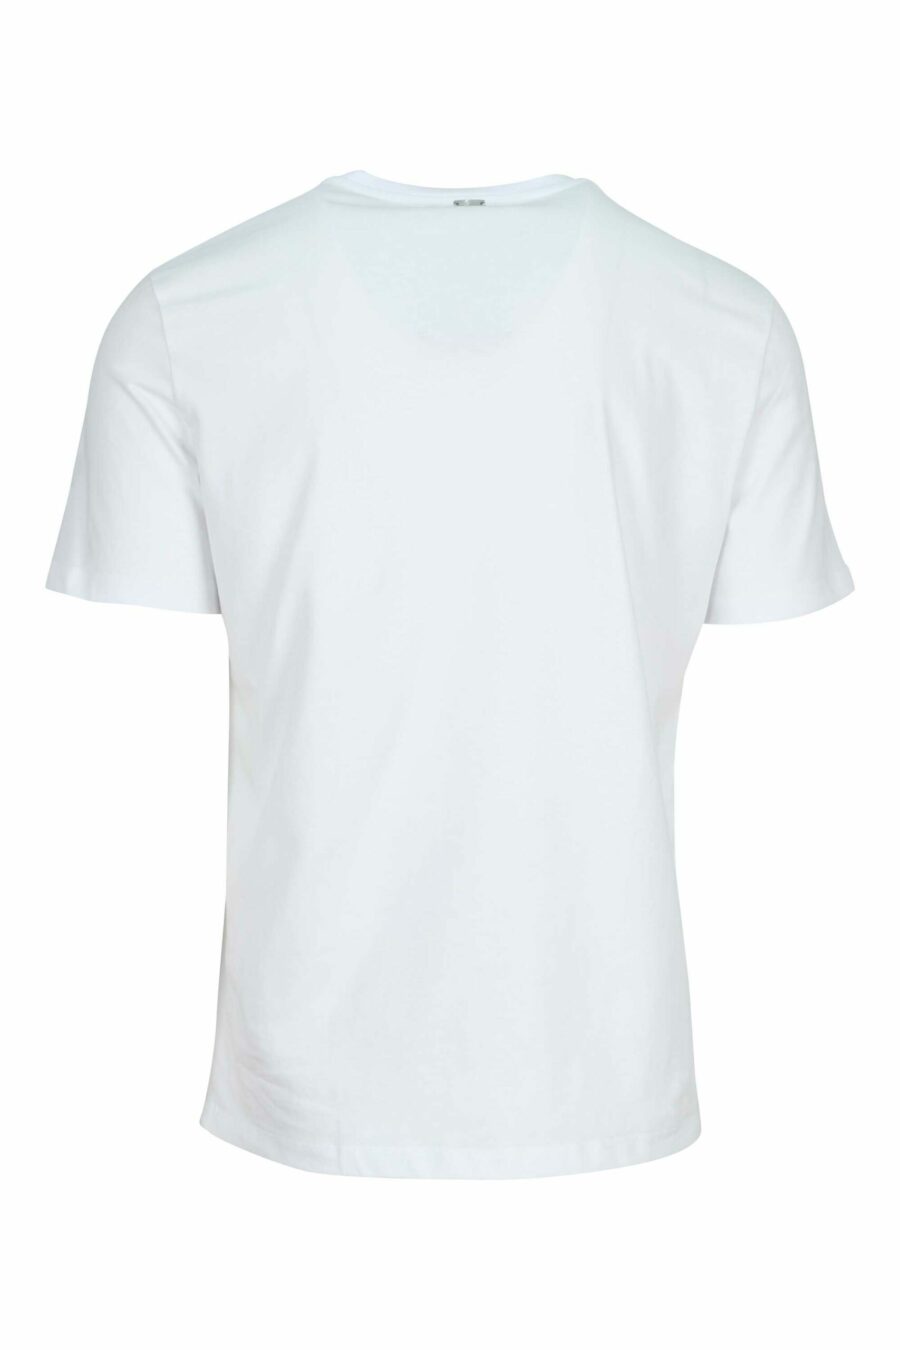 Camiseta blanca de punto - 8055721917702 1 scaled